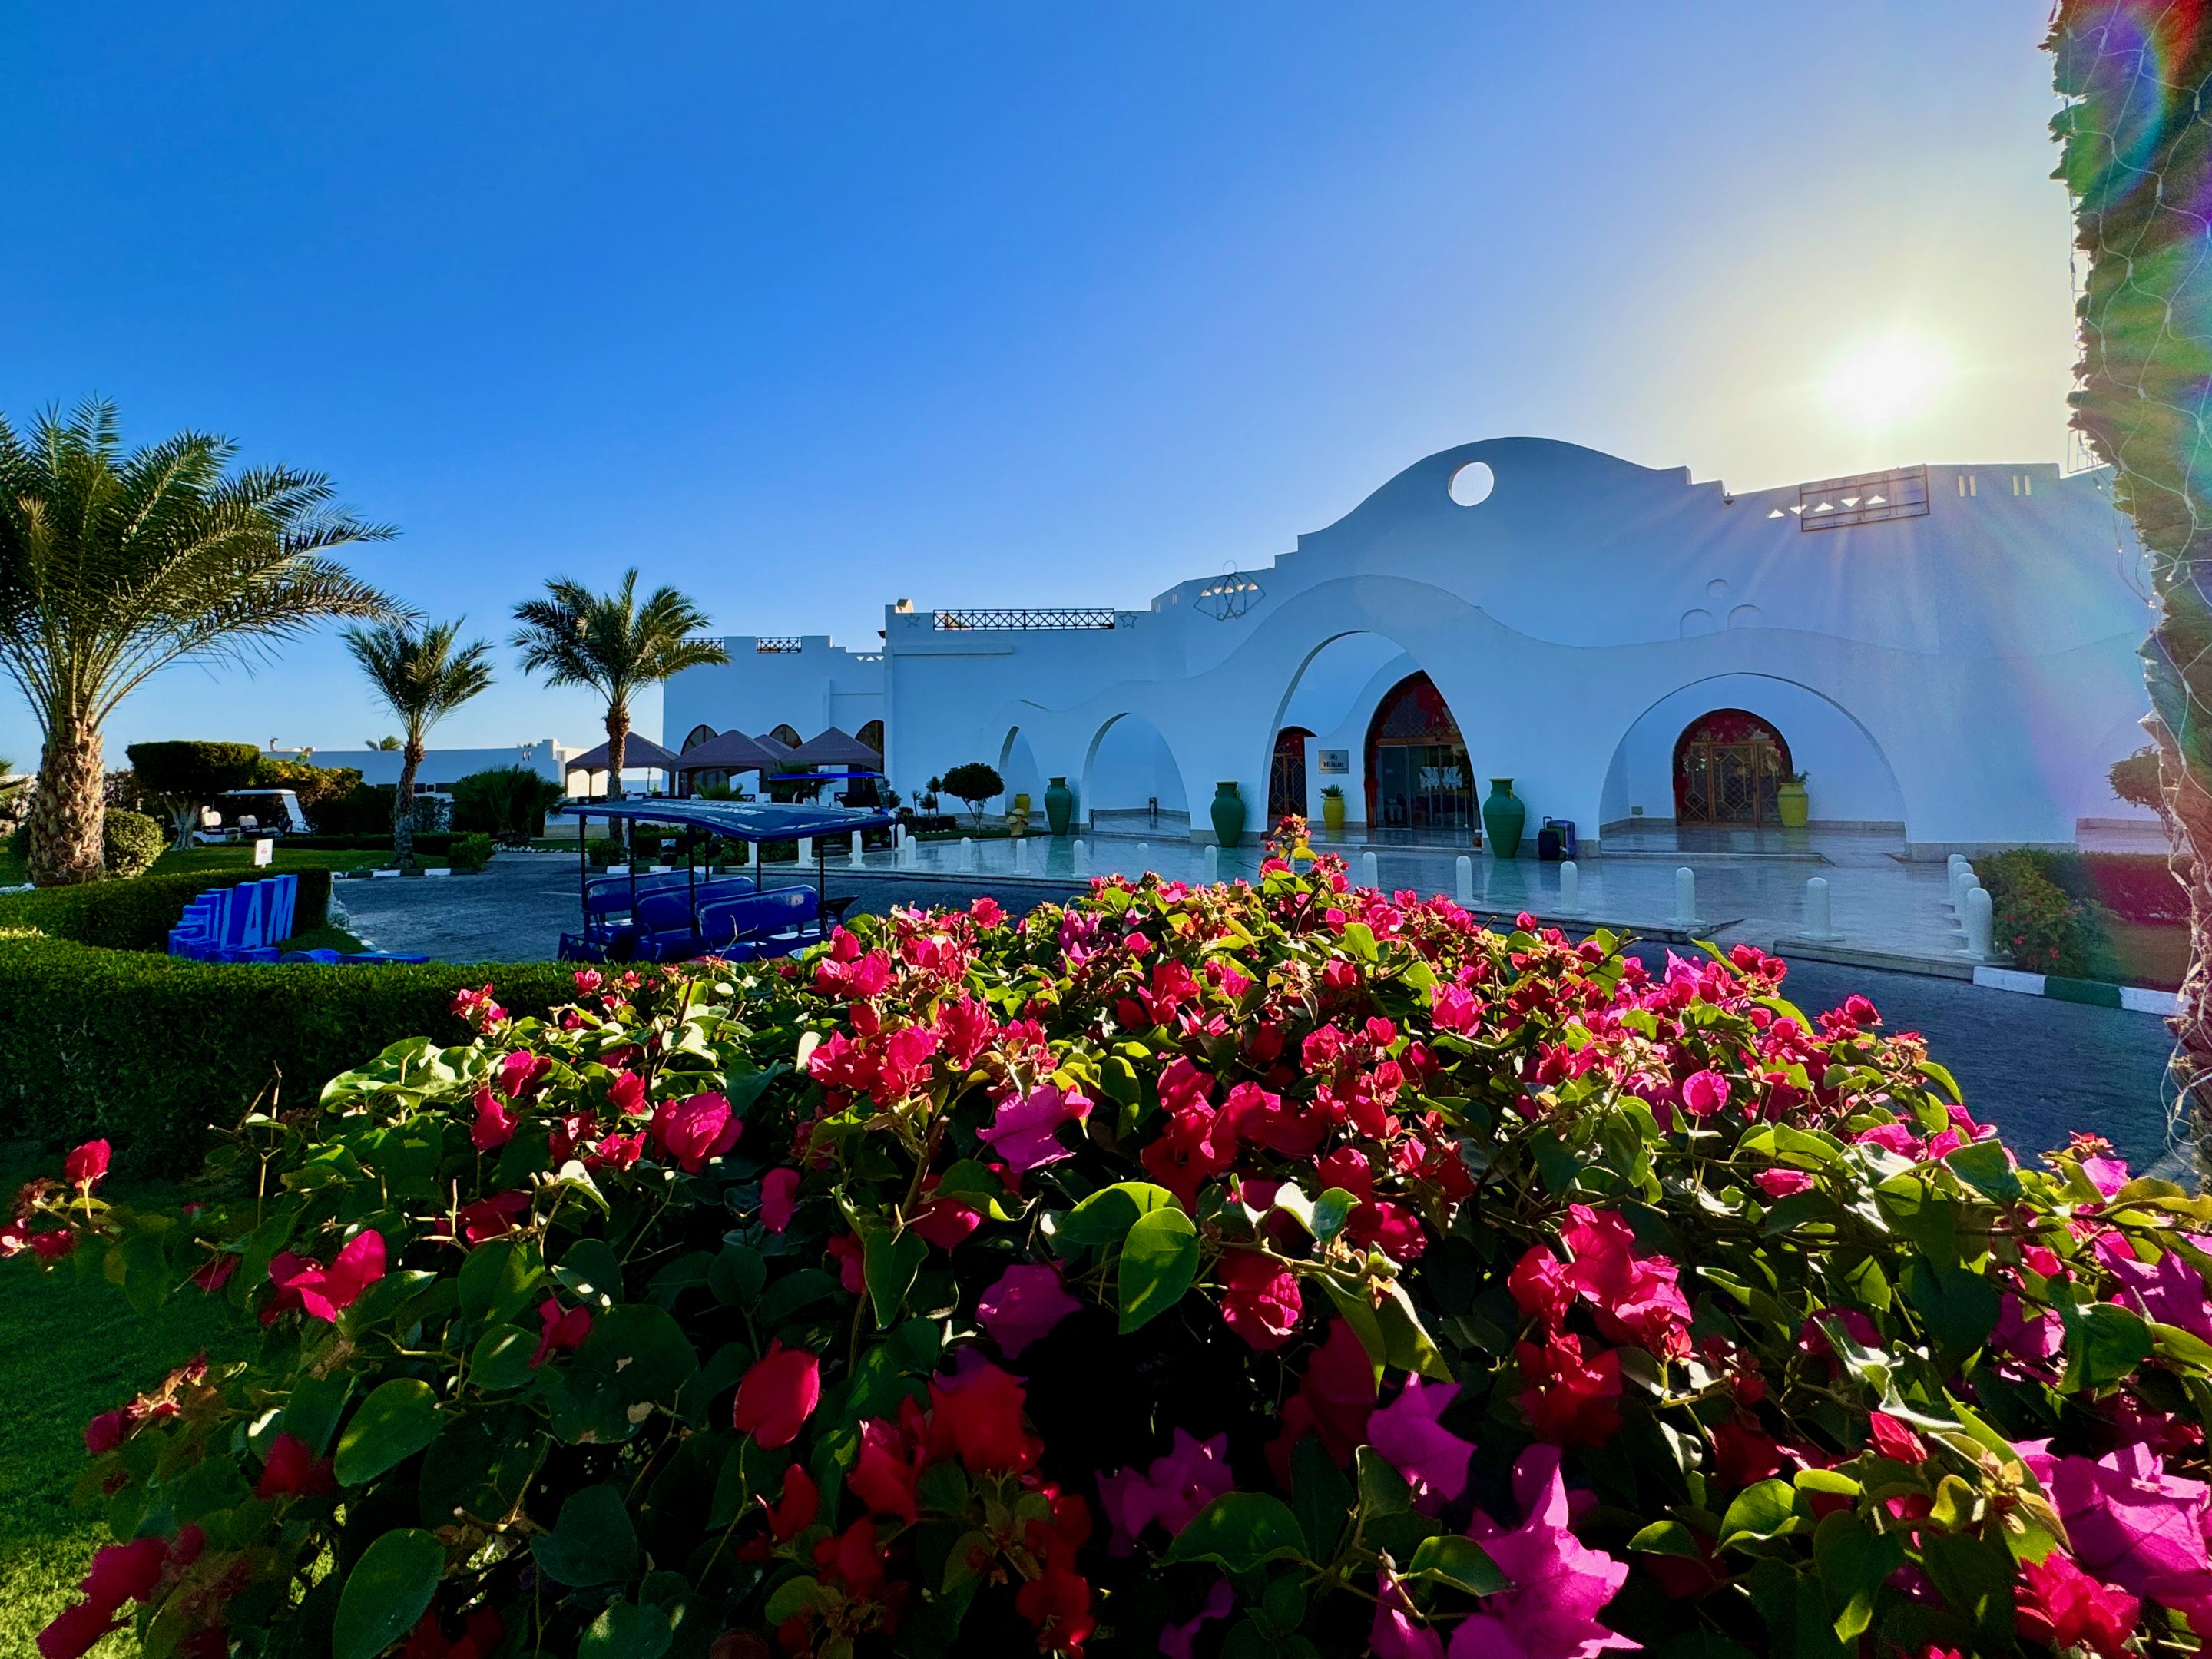 Le Hilton Marsa Alam Nubian Resort possède l’un des plus beaux complexes hôteliers que j’ai jamais visité en Égypte. Photo de : Hilton Marsa Alam Nubian Resort Experiences